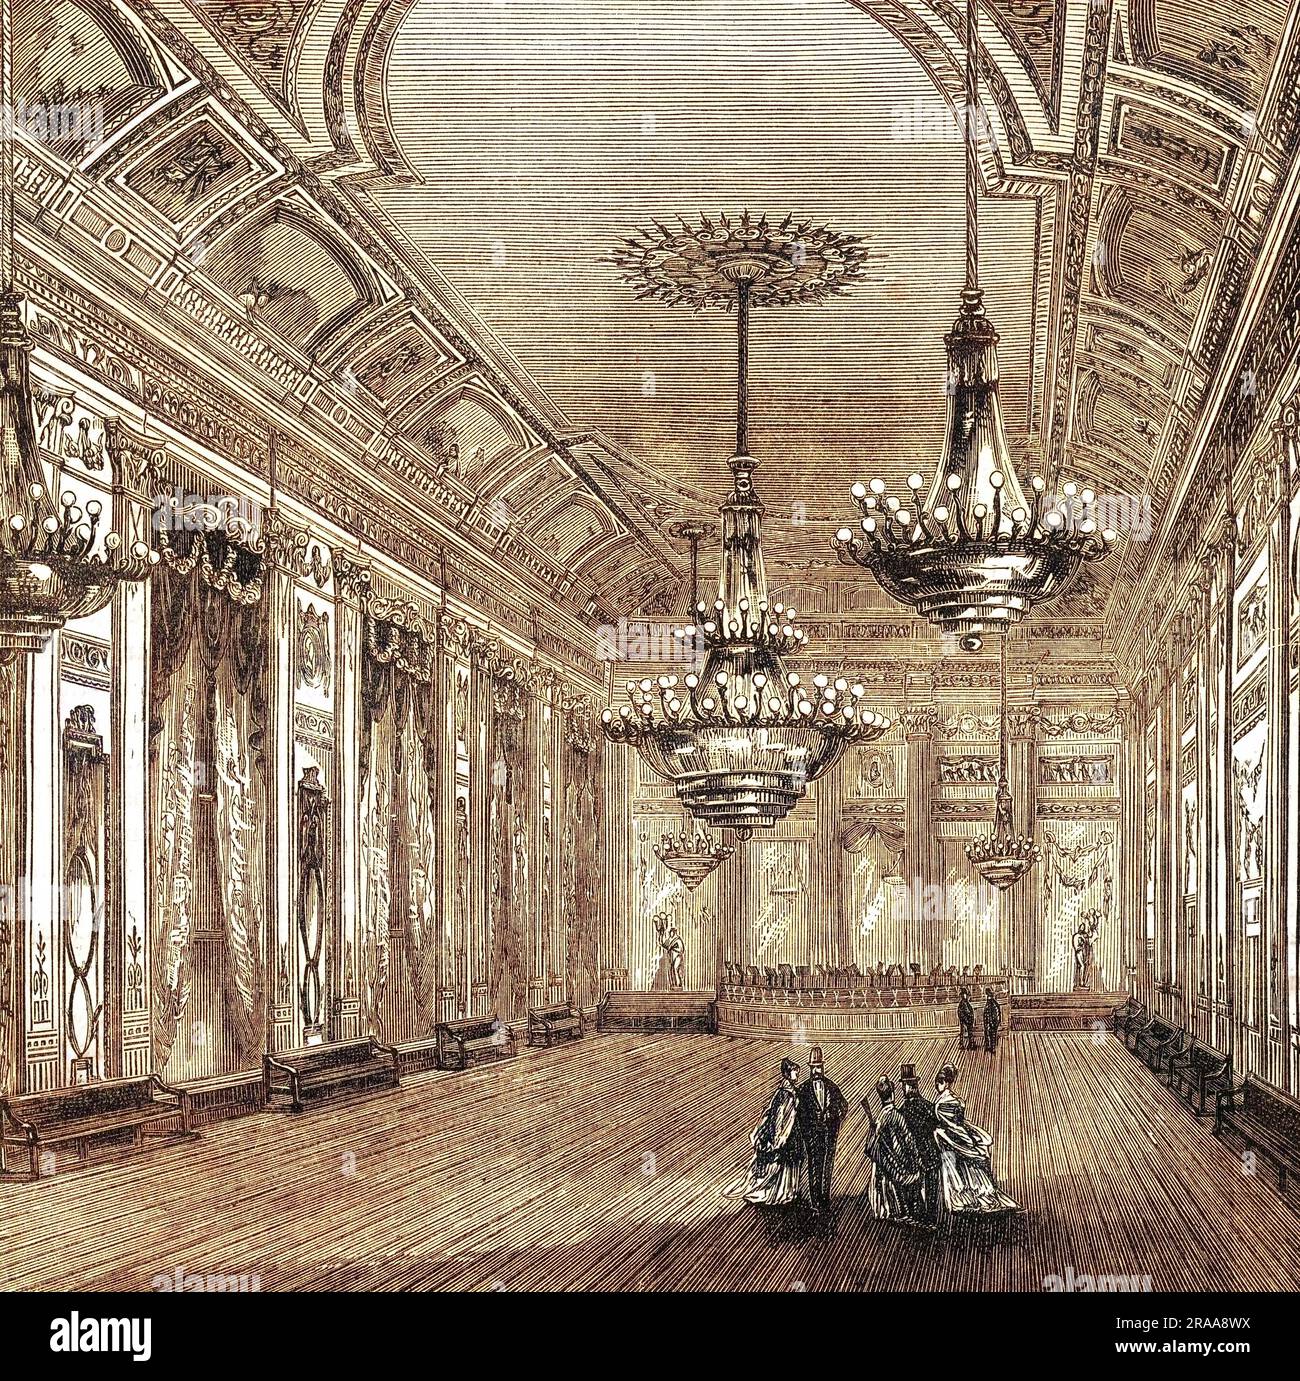 La sala da ballo delle Willis's Rooms, un tempo un elegante centro sociale. Data: Circa 1860 Foto Stock